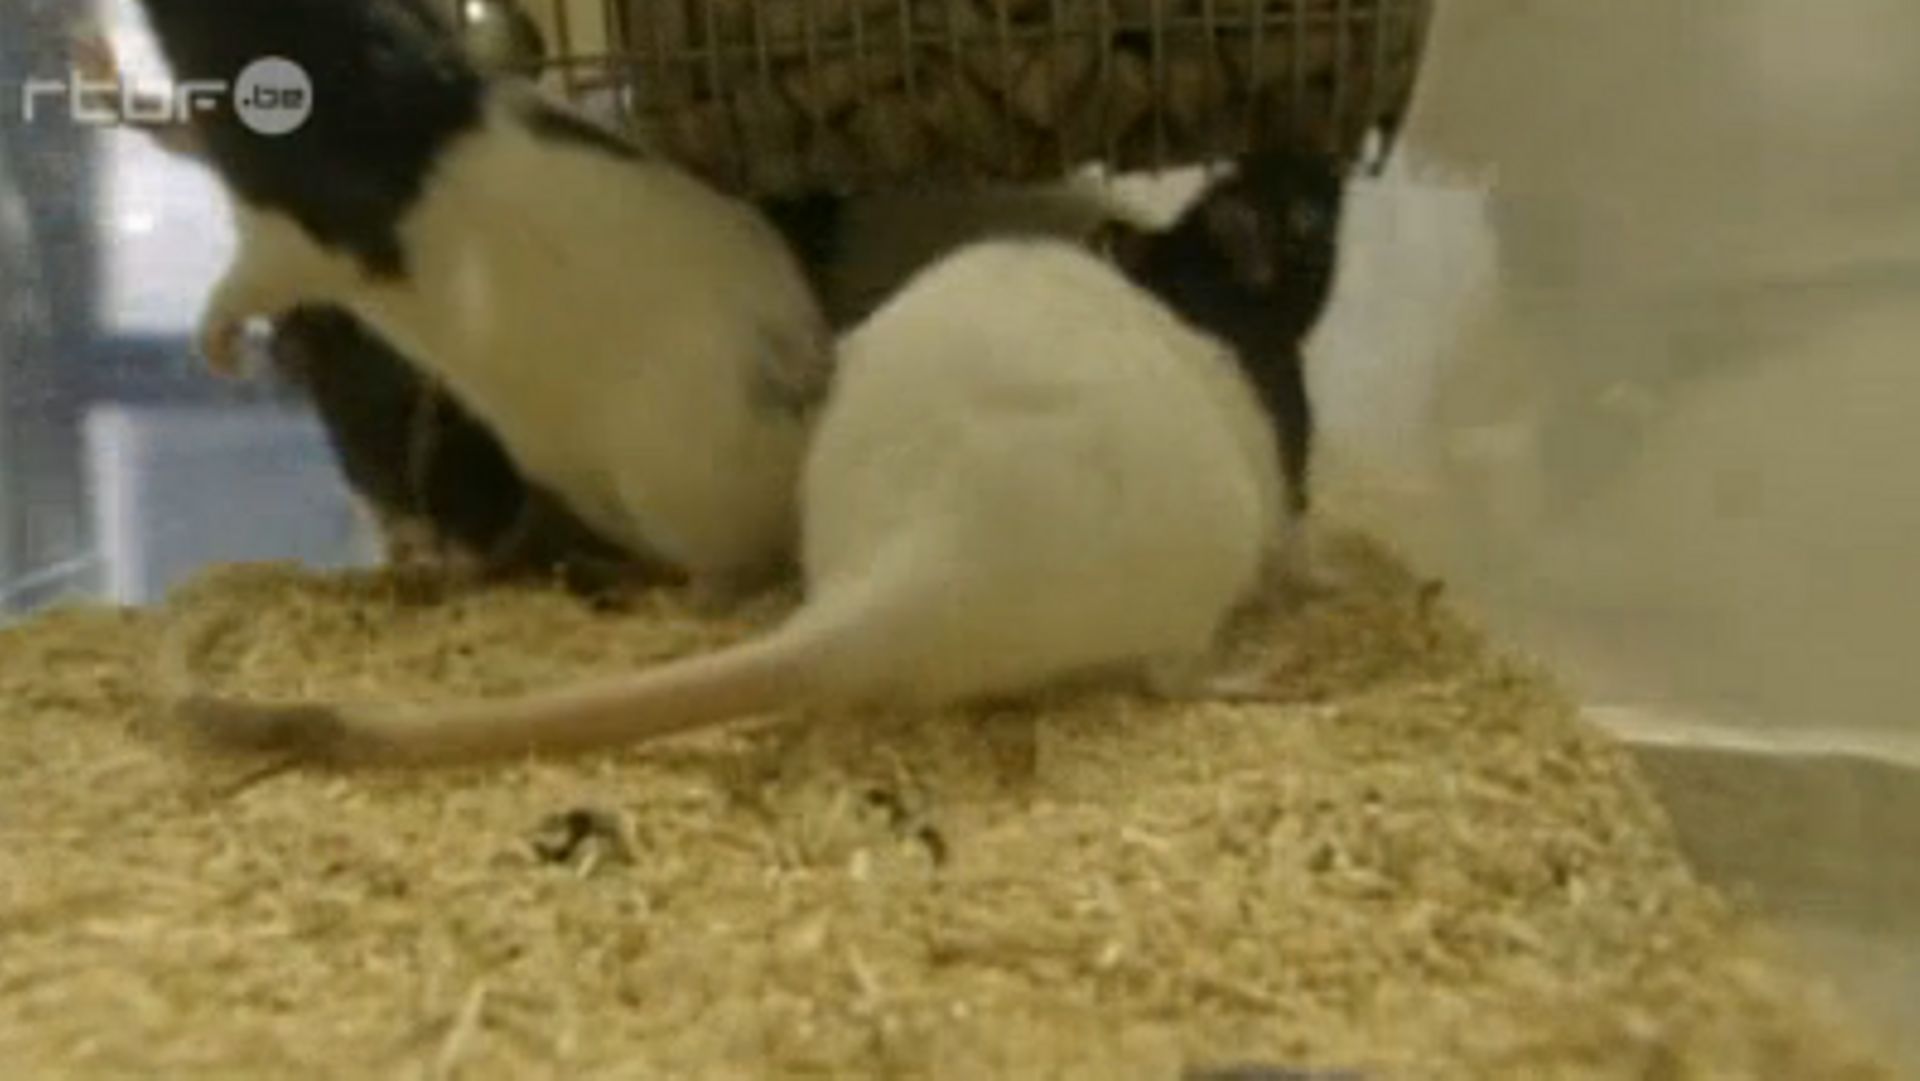 Les rats de Gilles-Eric Séralini développaient trop de cancers. Monsanto s'emploie-t-il à faire en sorte que cela ne se sache pas ?